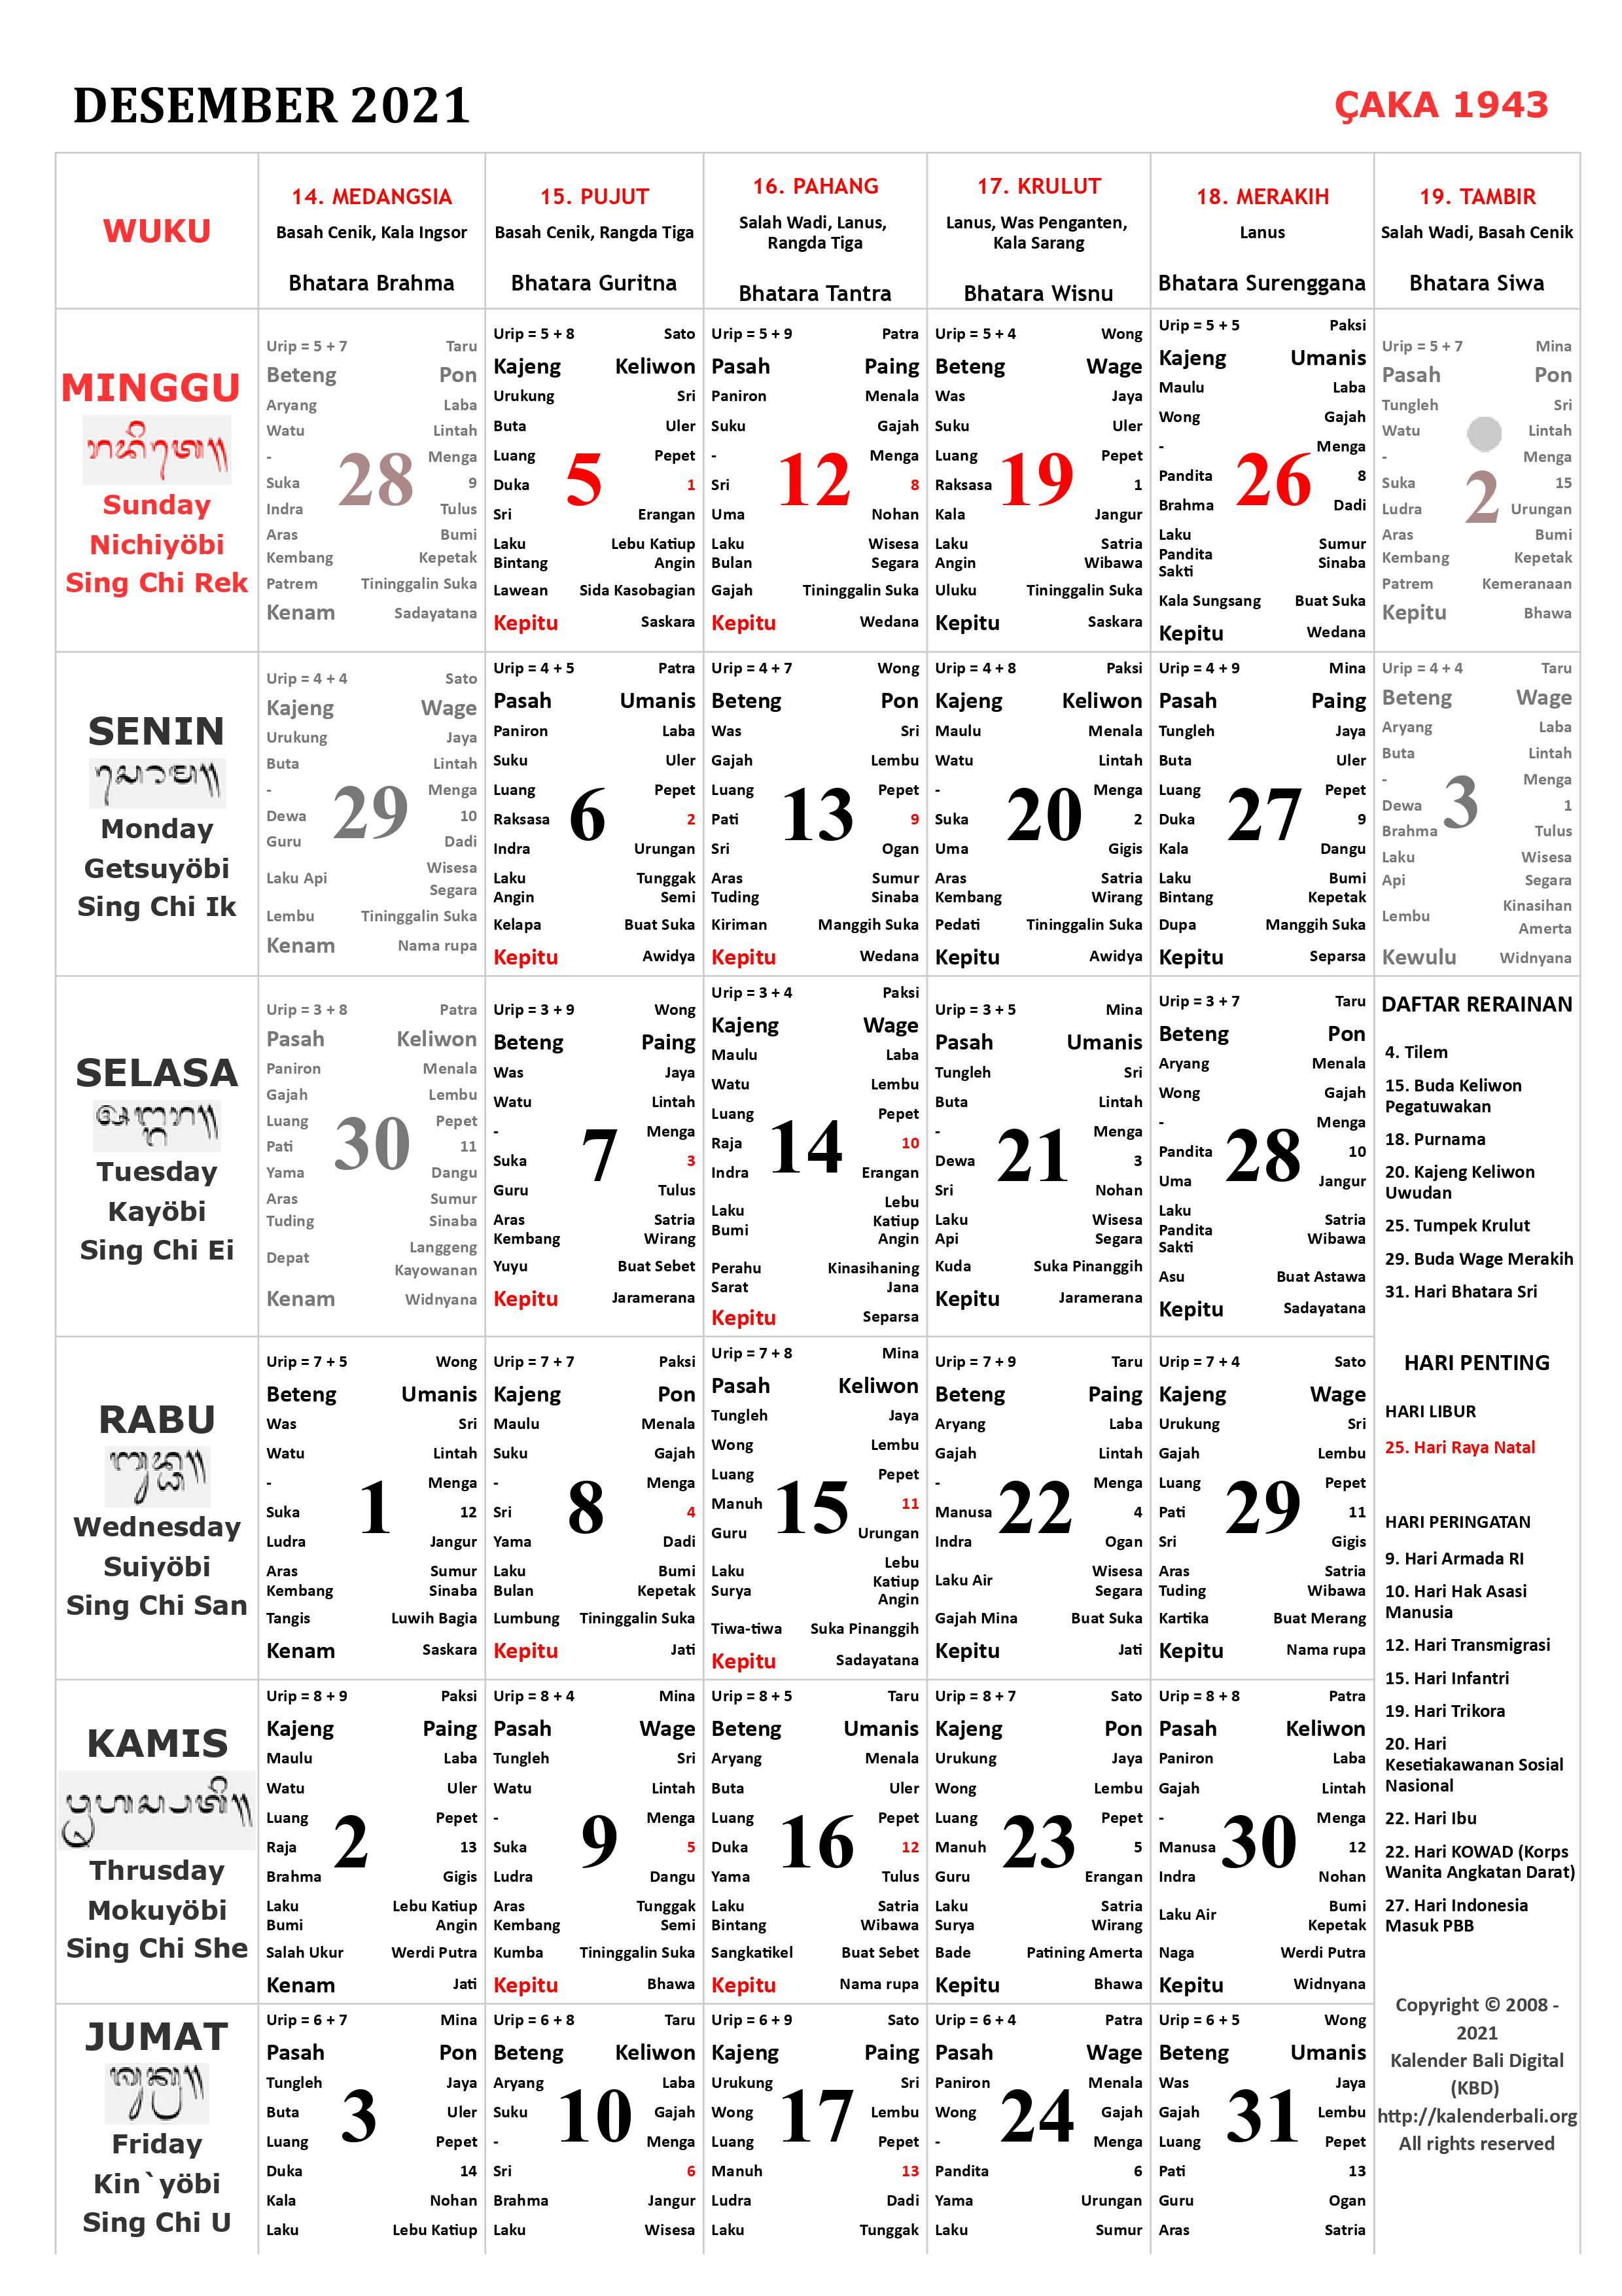 Simak Kalender Bali Bulan Desember 2021, Lengkap dengan Hari Perayaan Rerainan dari Purnama hingga Bhatara Sri